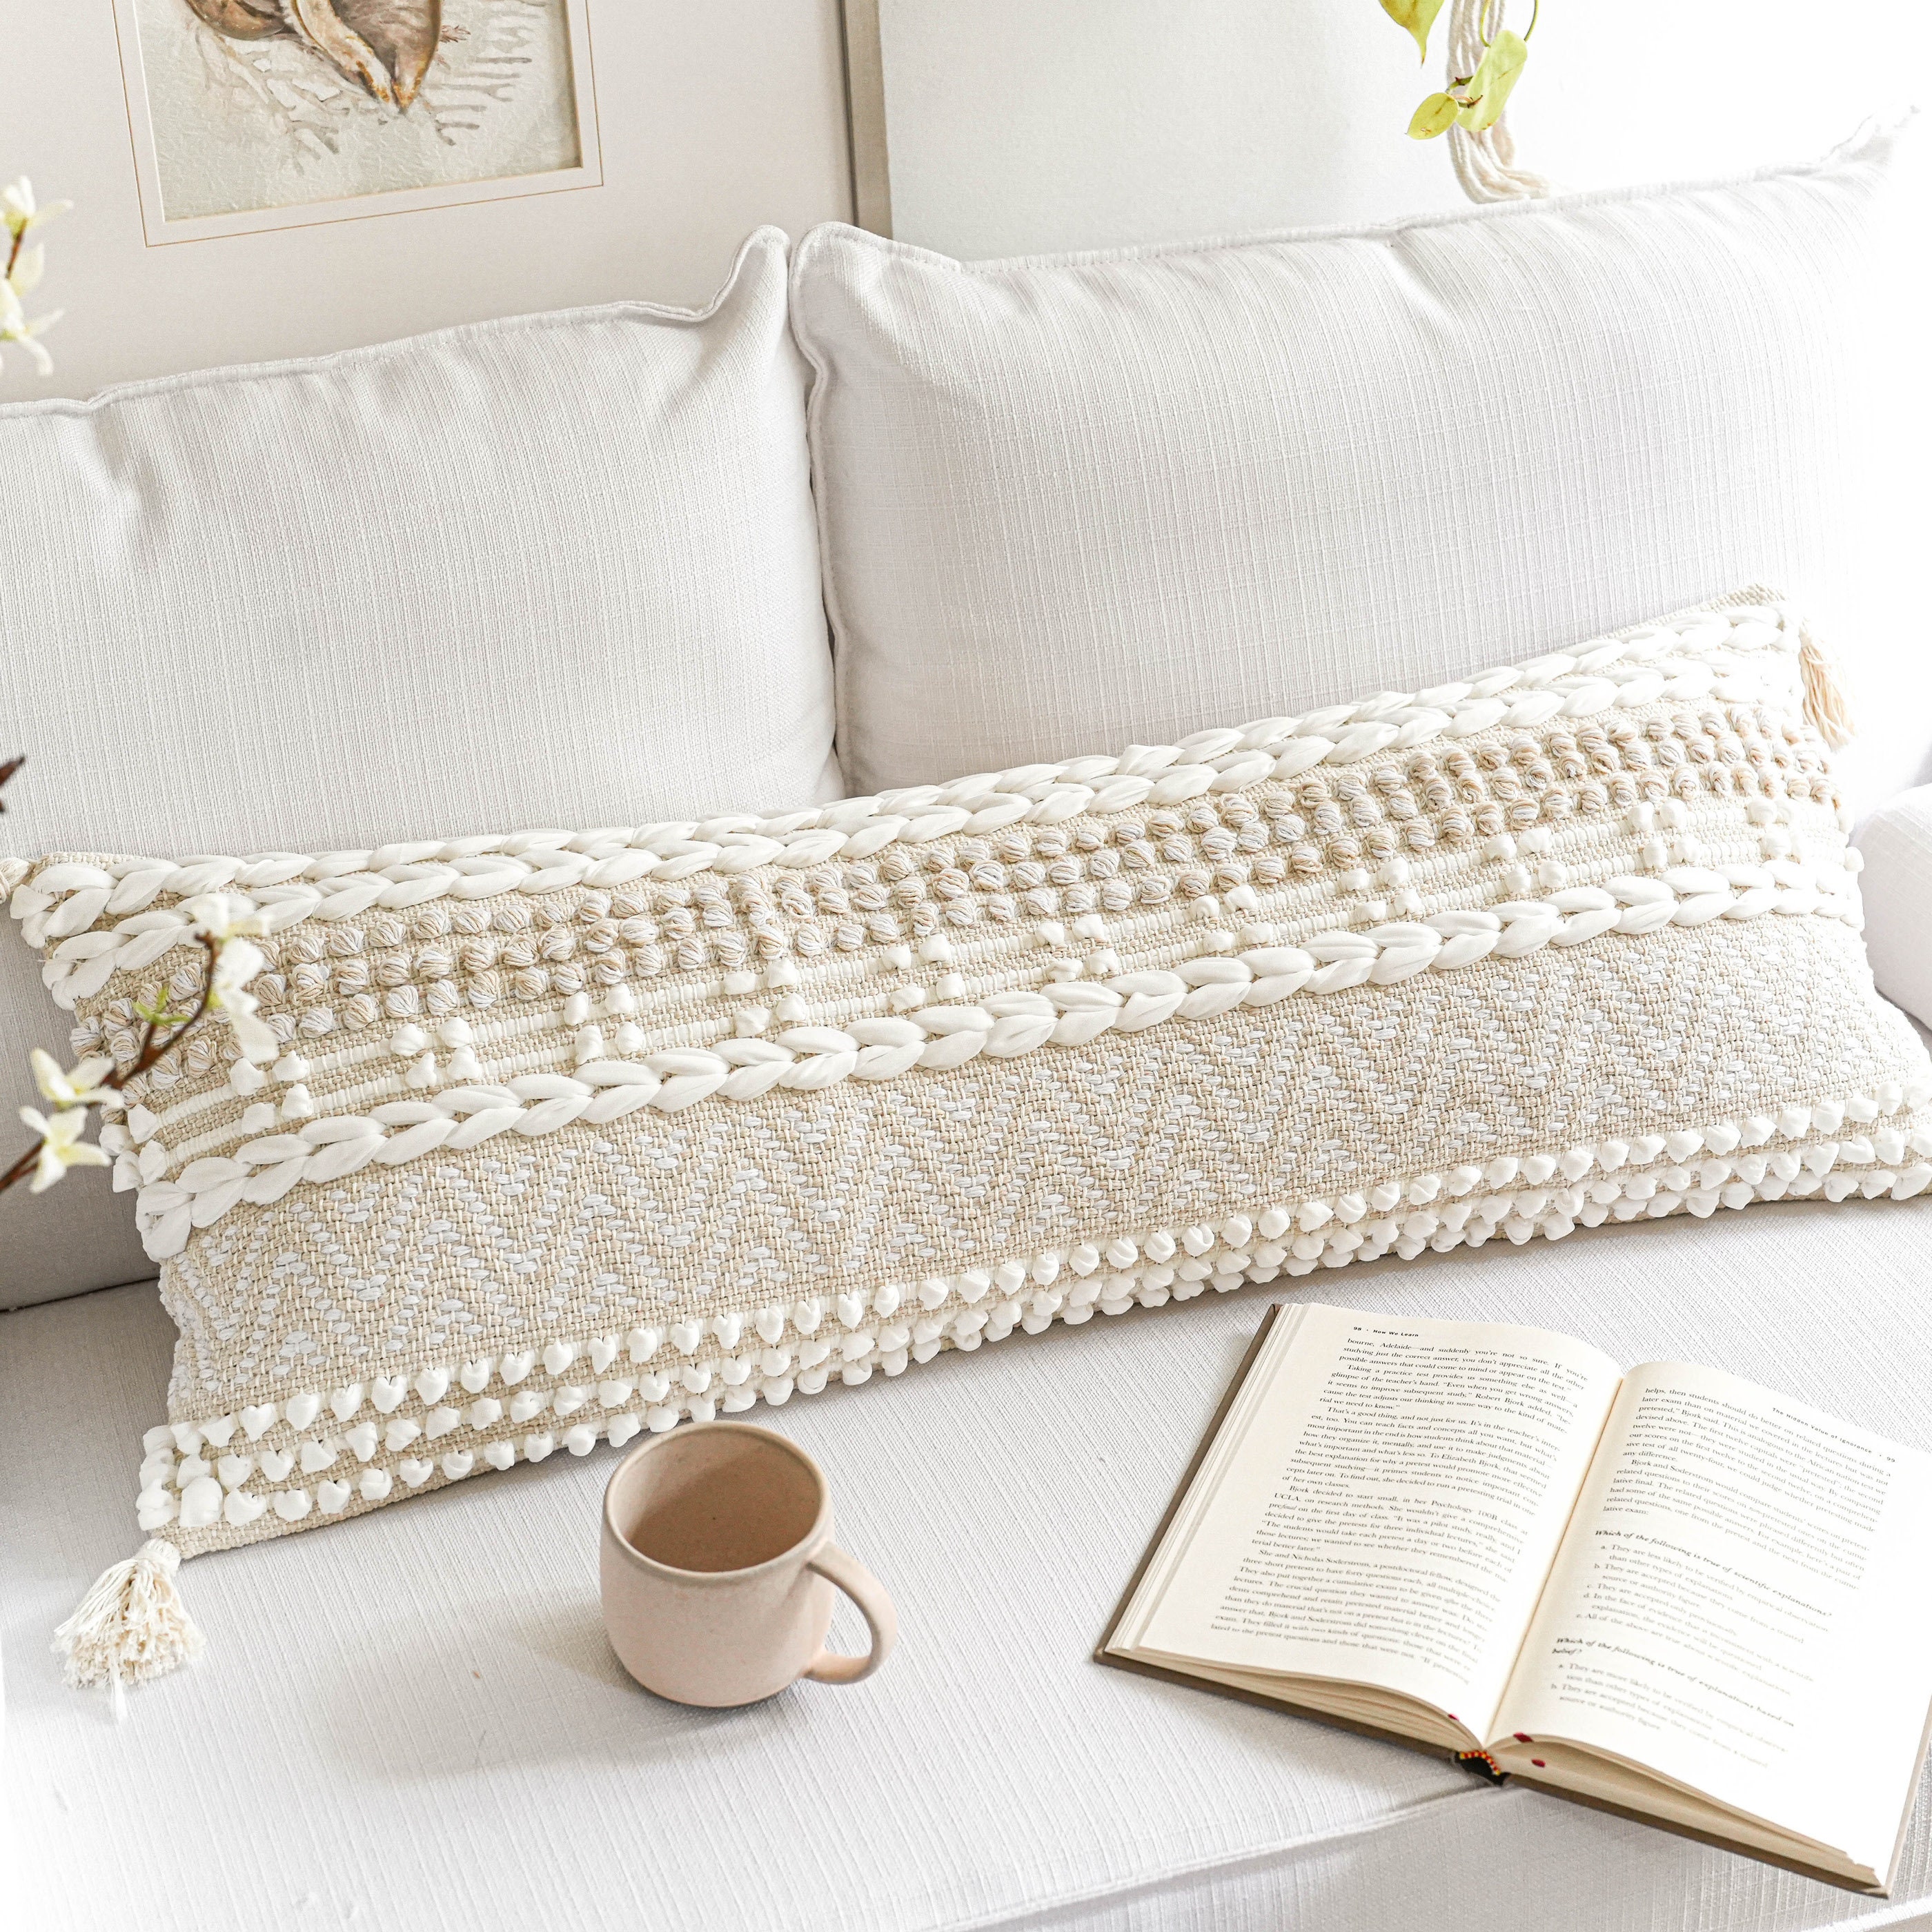 Cotton Canvas Lumbar Pillow Cover Neo // 14 X 36 Lumbar Cushion Cover //  Black and White Lumbar // Black and Cream Lumbar 